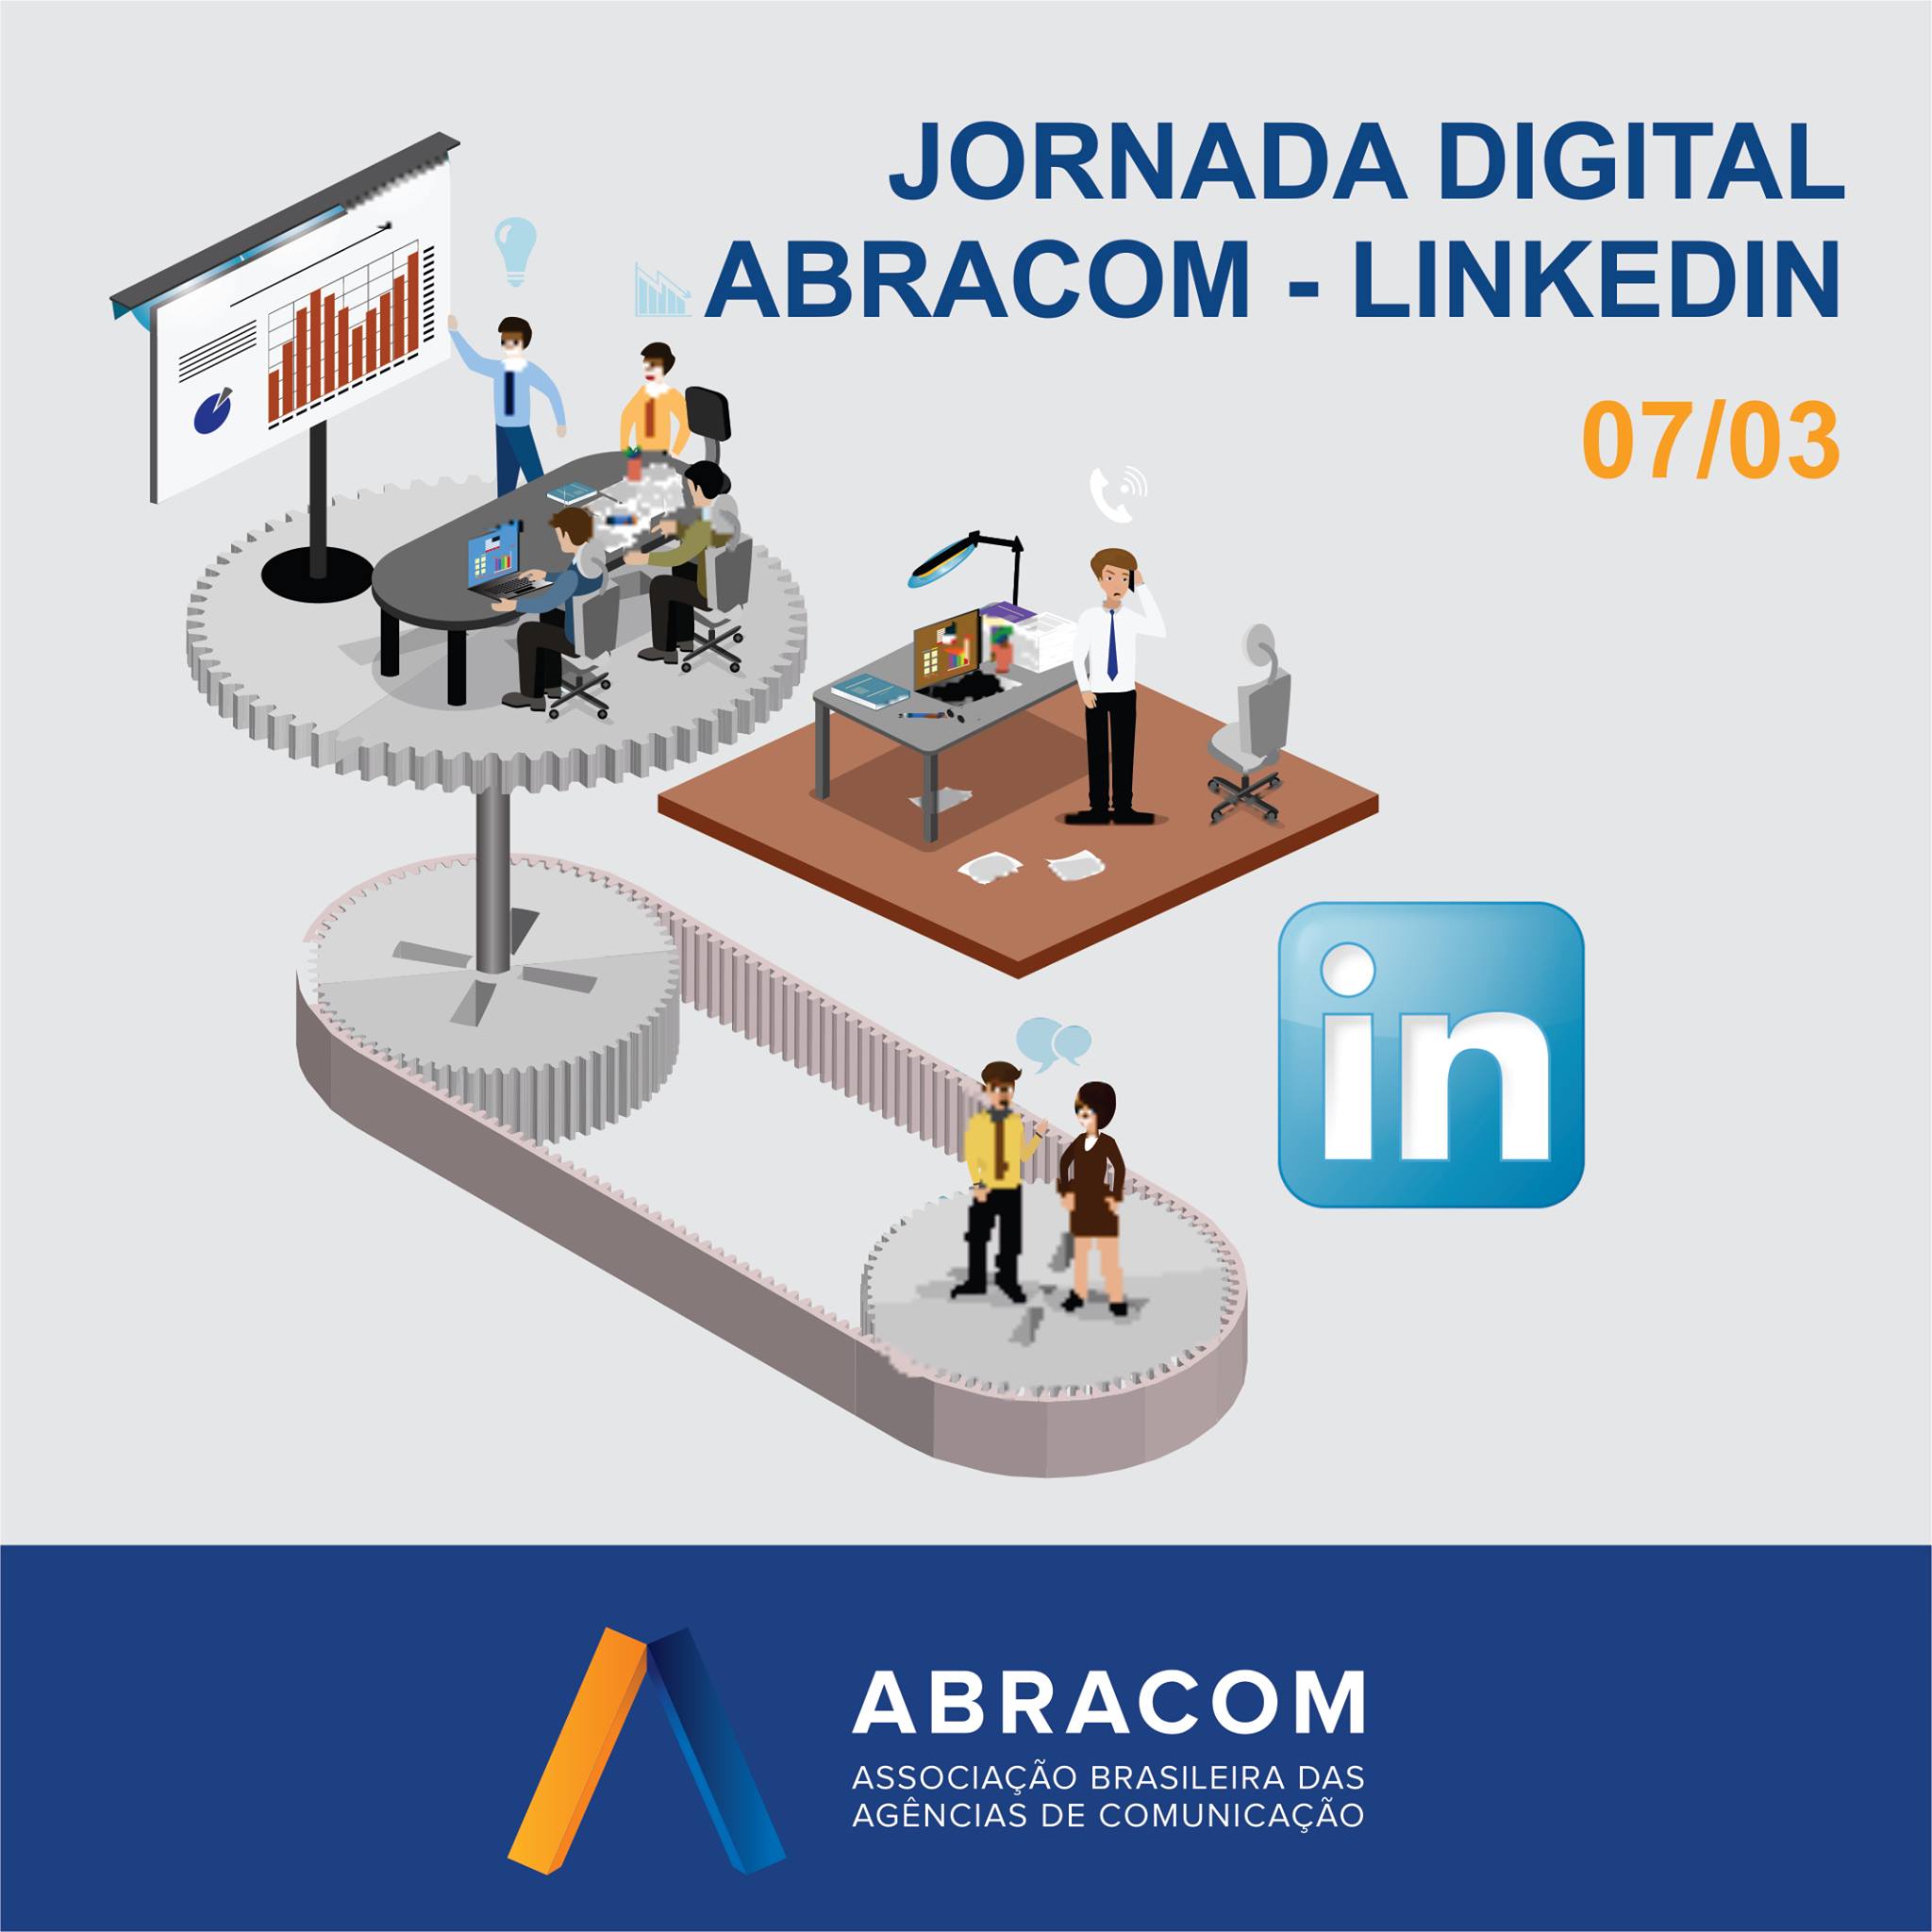 ABRACOM_IMAGENS_Jornada Digital da ABRACOM sobre LinkedIn_2017 03 07